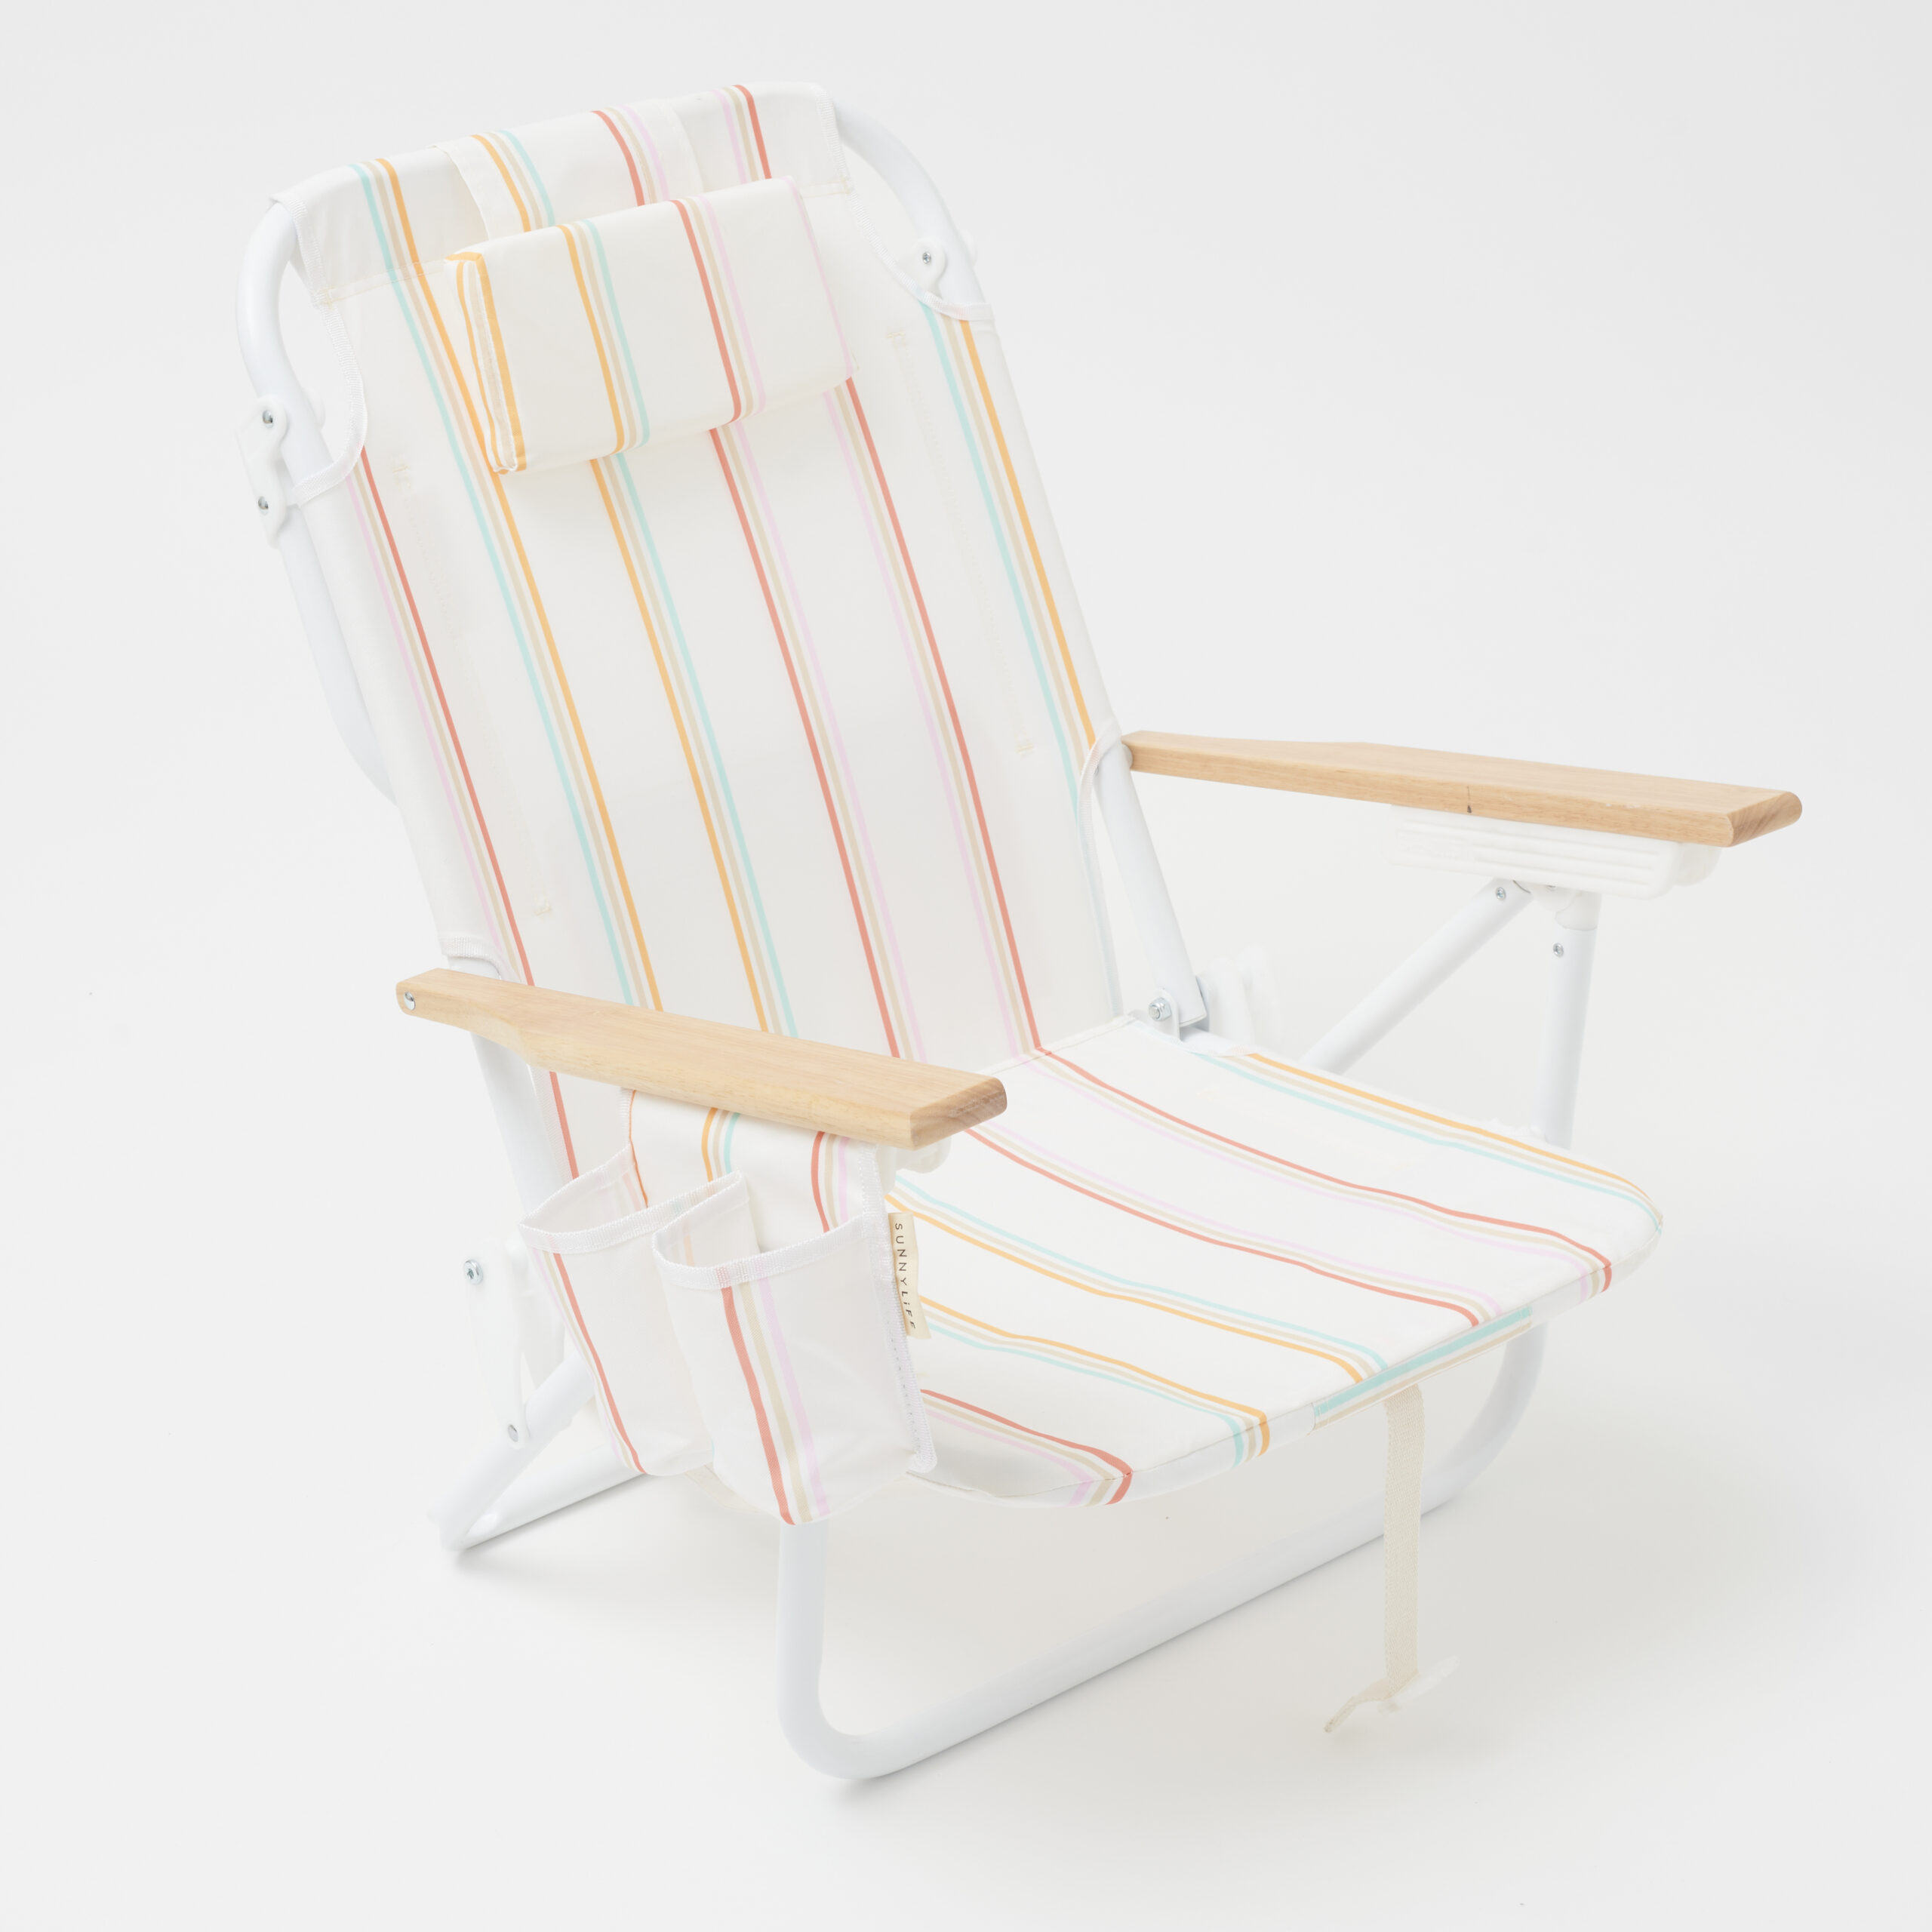 SunnyLife Rio Stripe Beach Chair